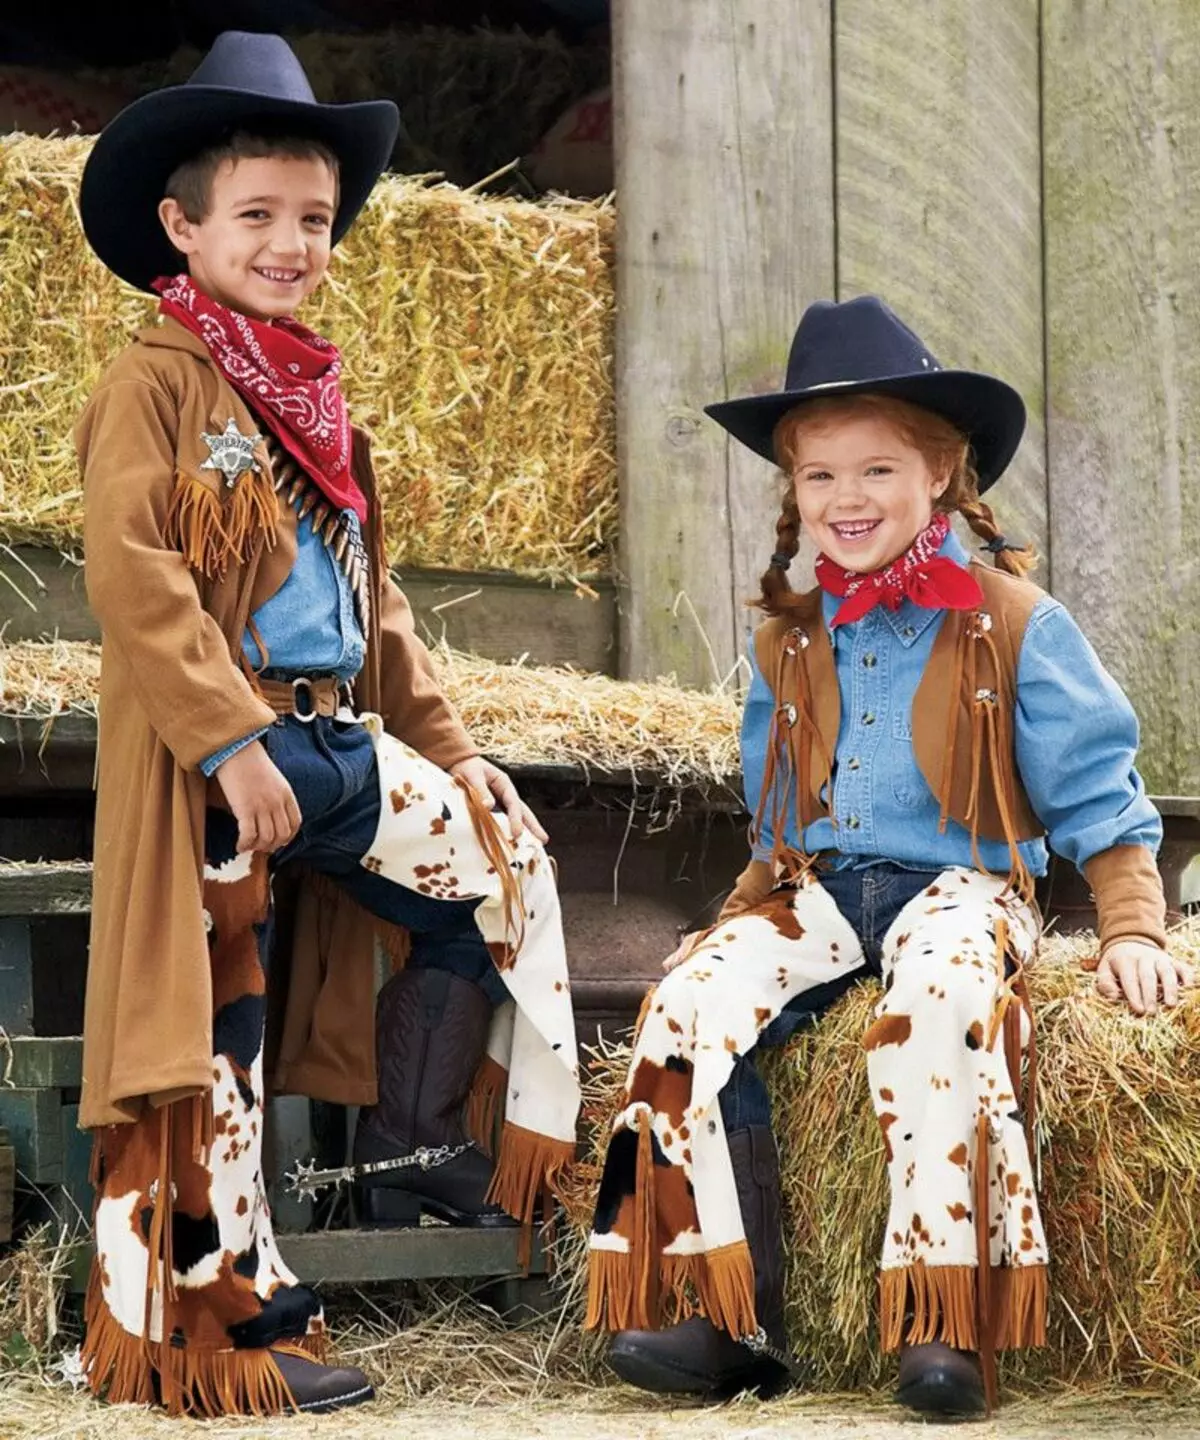 Cowboy Party: Wild West Syntymäpäivä Skenaario, Cowboysin kilpailu ja suunnittelu, puvut lapsille ja aikuisille 18176_30